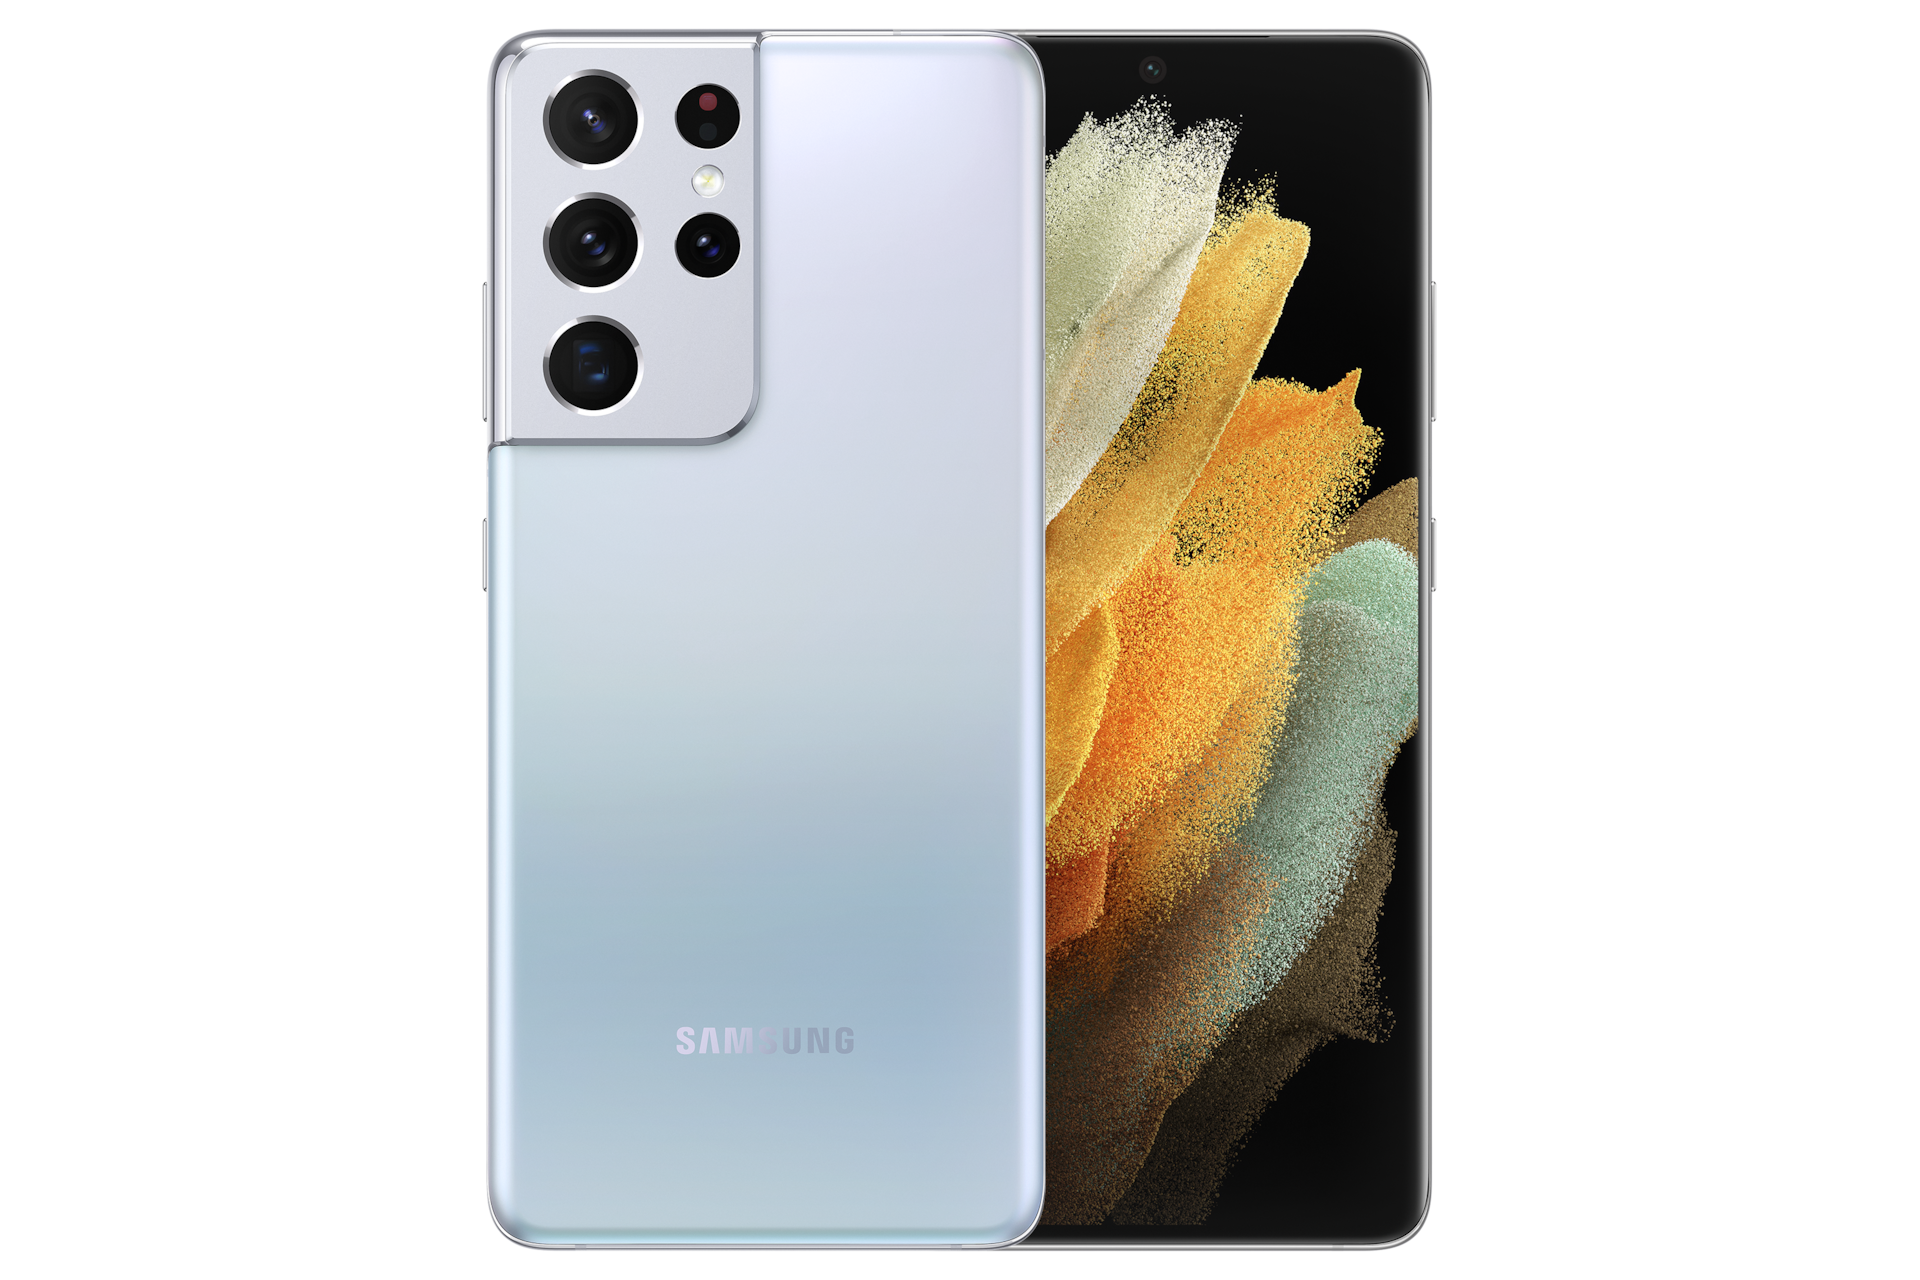 Samsung Galaxy S21 Ultra 5G Libre Color Black - Celutronic Venta de  Celulares Libres en Argentina